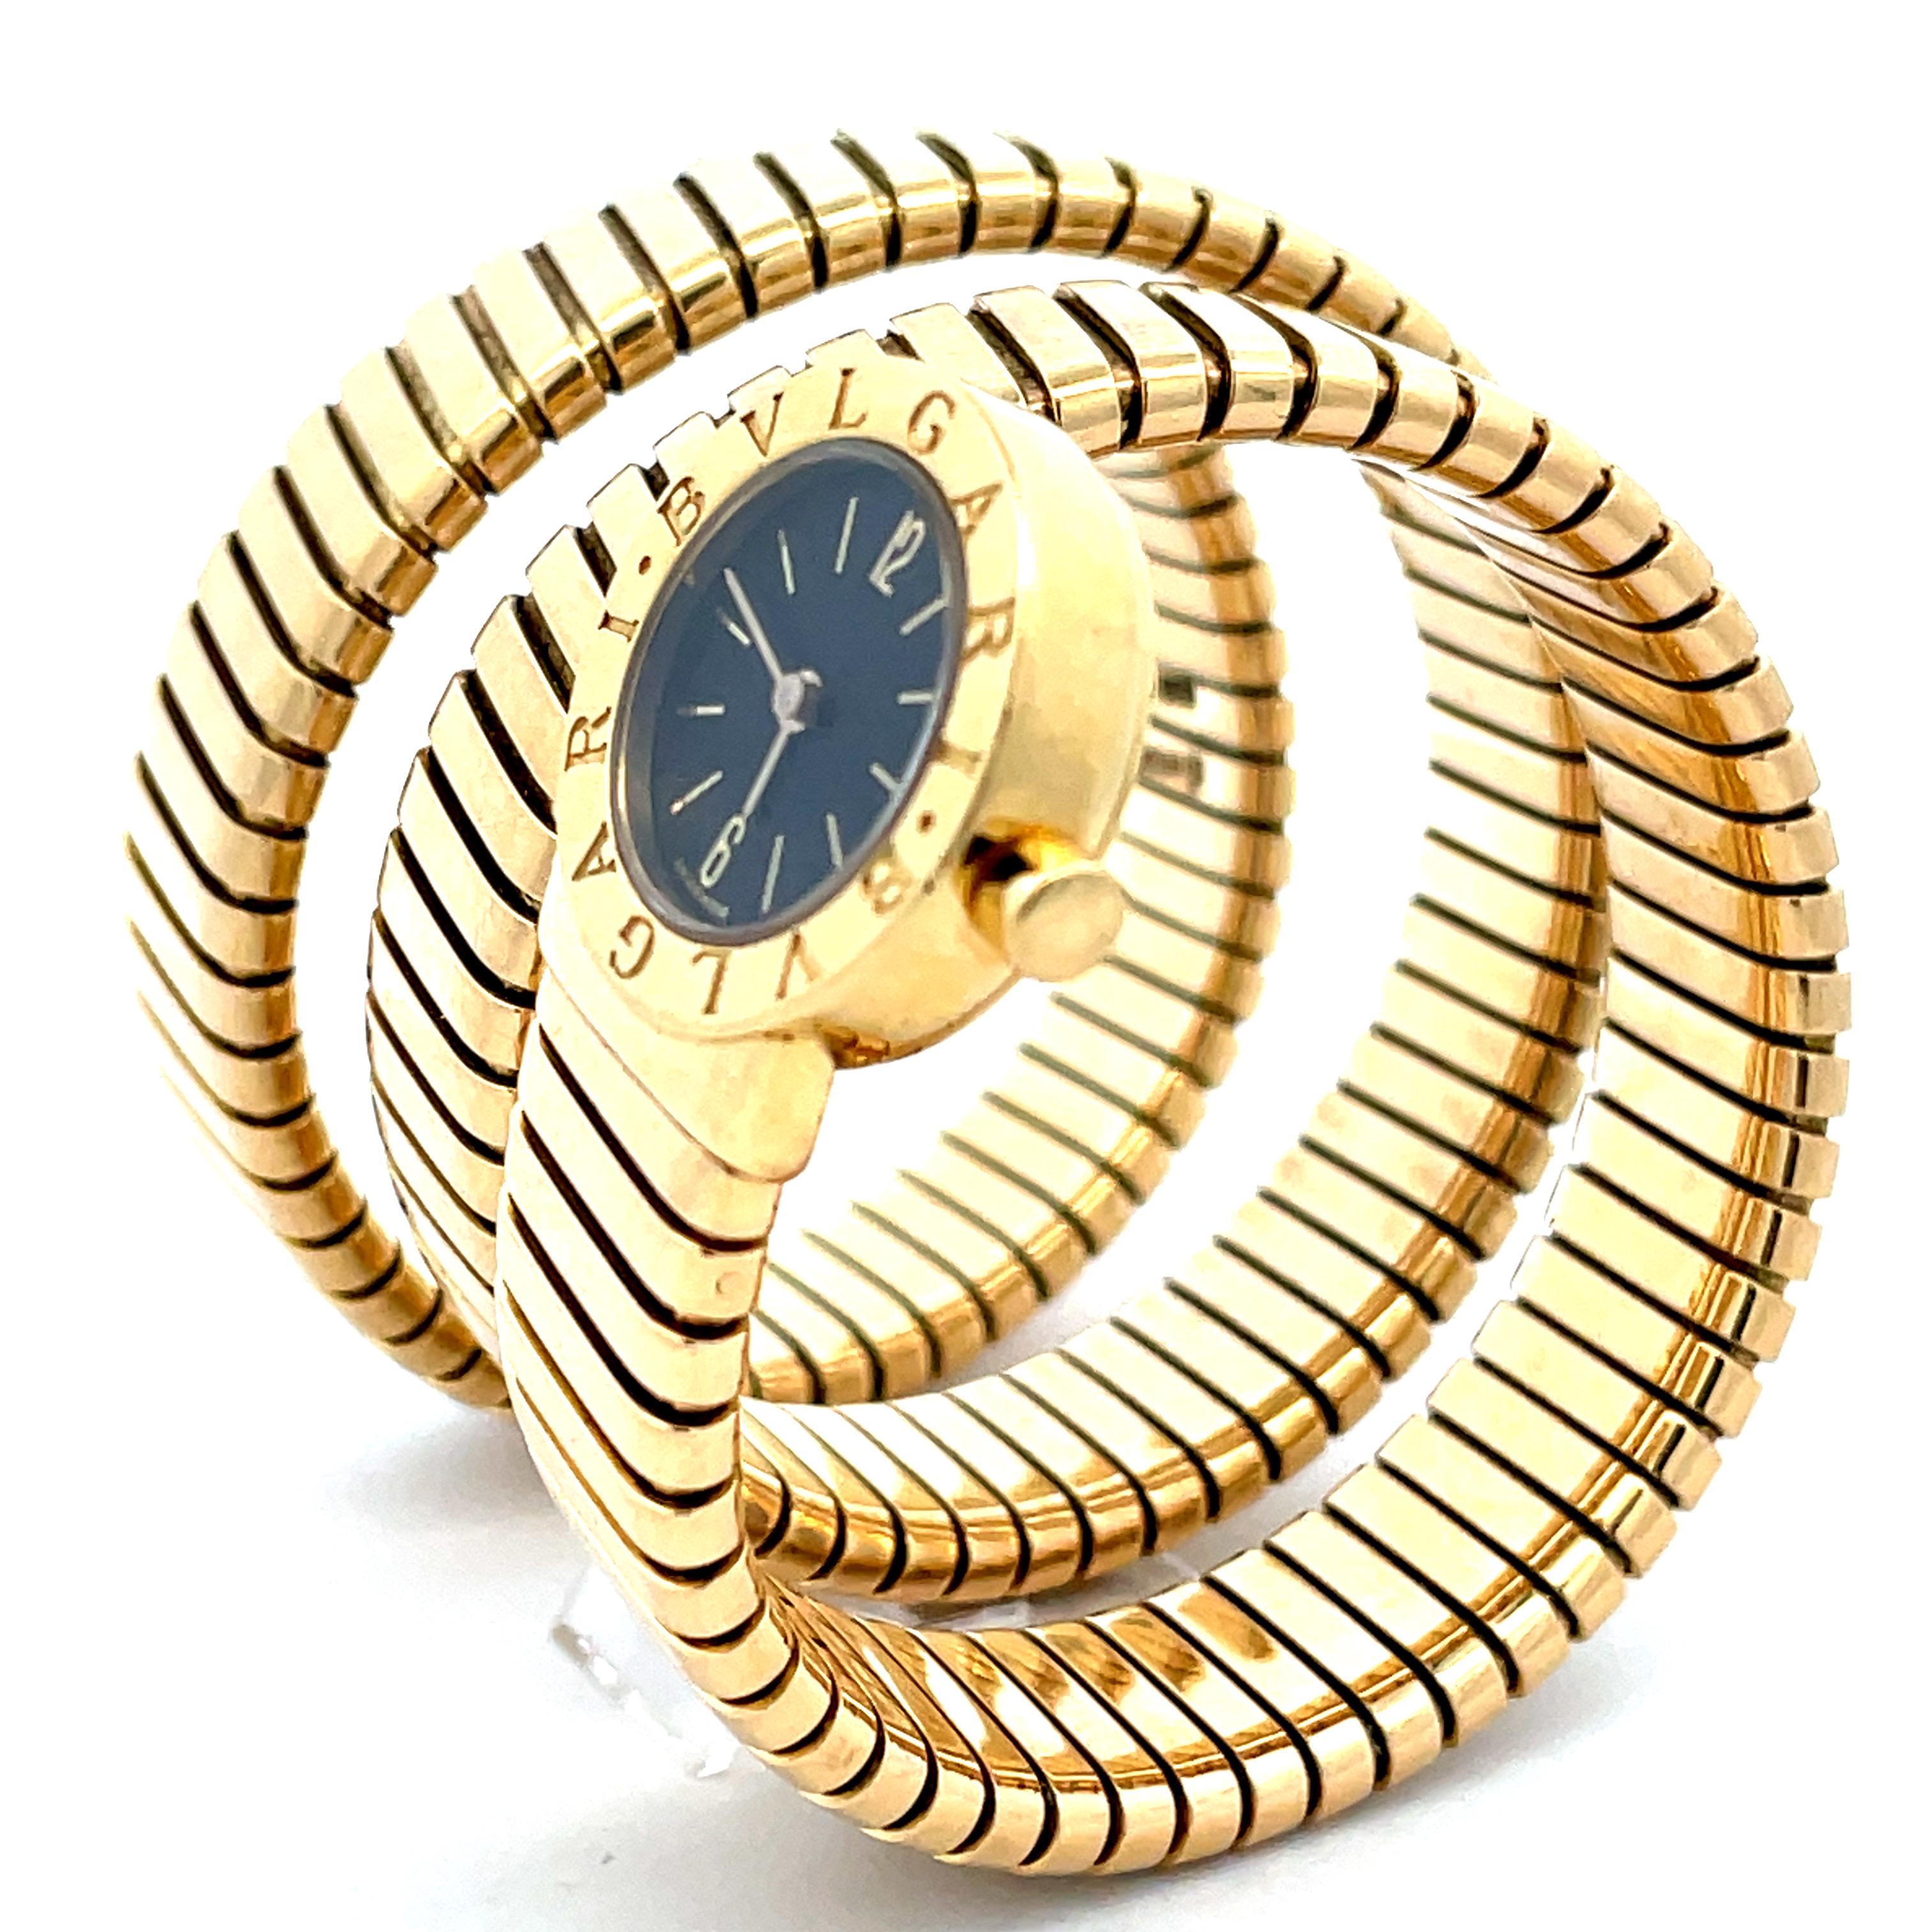 Il n'y a pas mieux que cette montre bracelet serpent Bulgari Tubogas pour femme en or jaune 18 carats. Cette montre à quartz a une petite tête ronde et un cadran noir. Une montre emblématique que vous porterez pour toujours. 
1978 circa.
Une